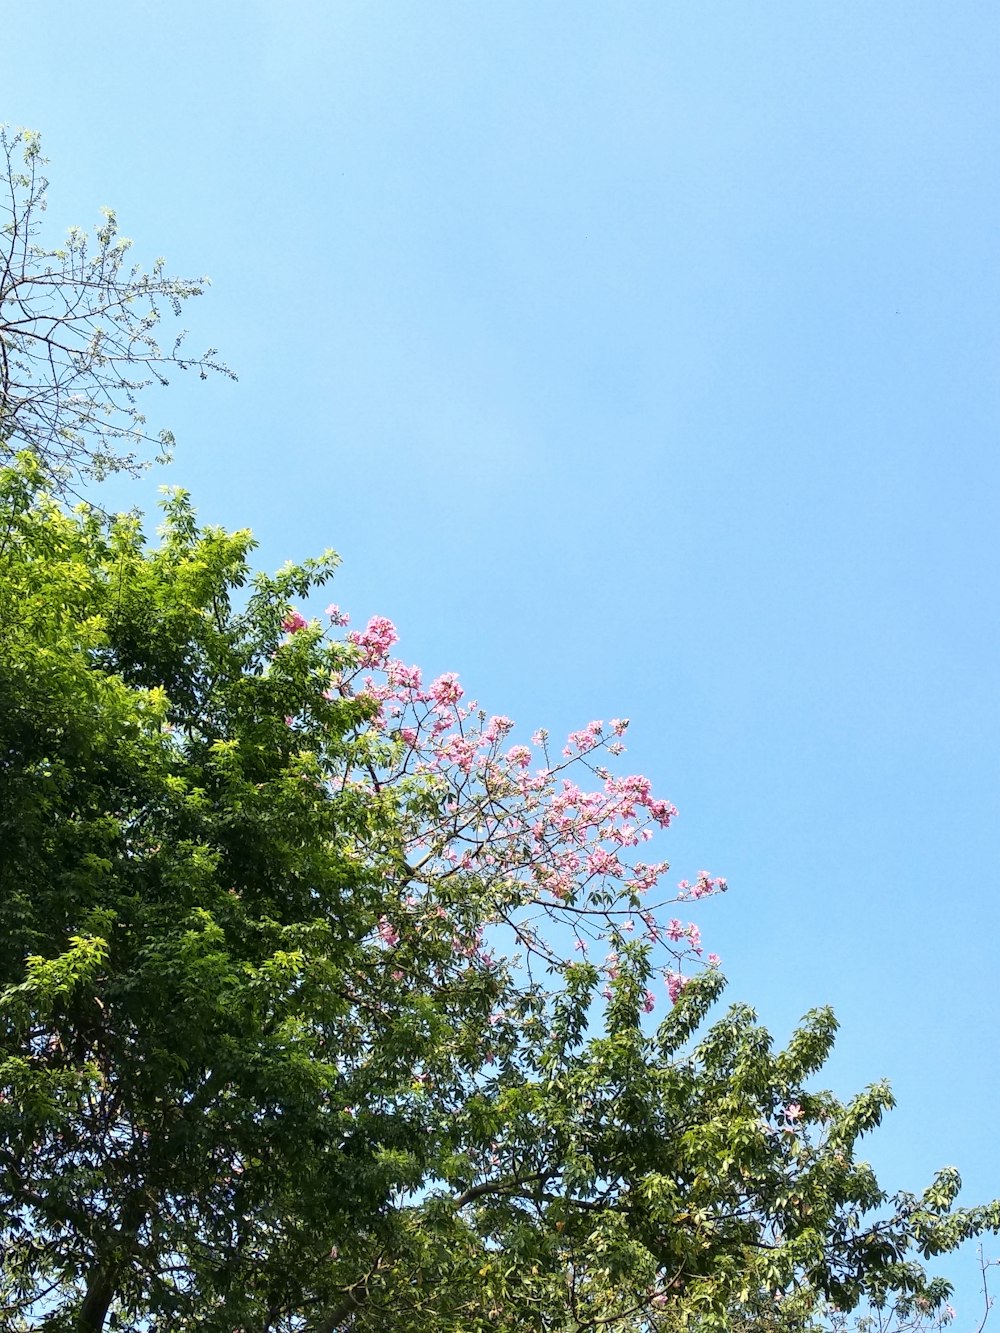 albero fiorito dai petali rosa a foglia verde sotto il cielo blu calmo